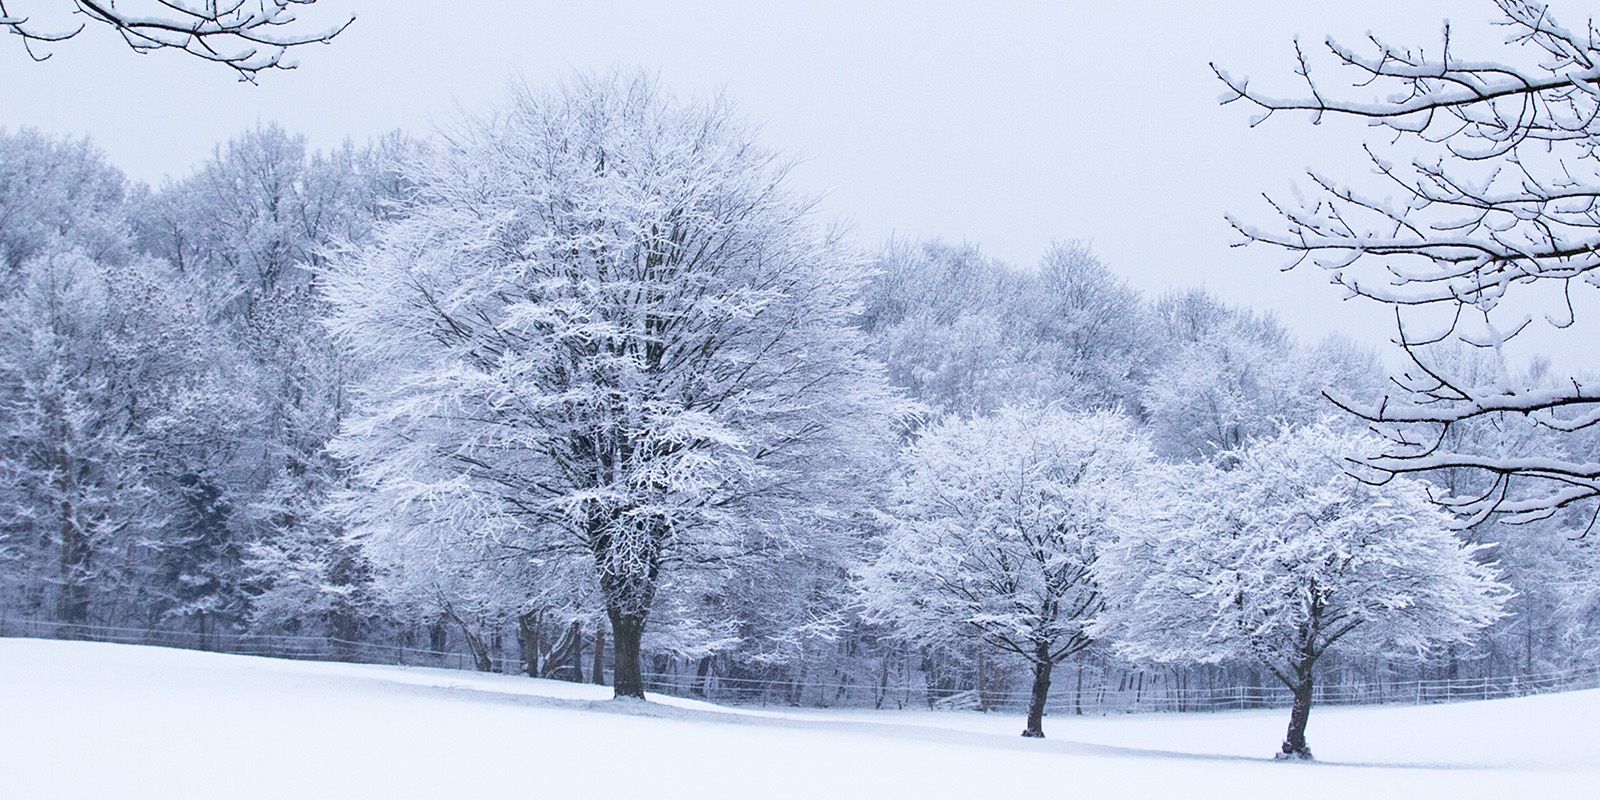 Schnee bedeckte die Bäume. Foto: André Zand-Vakili